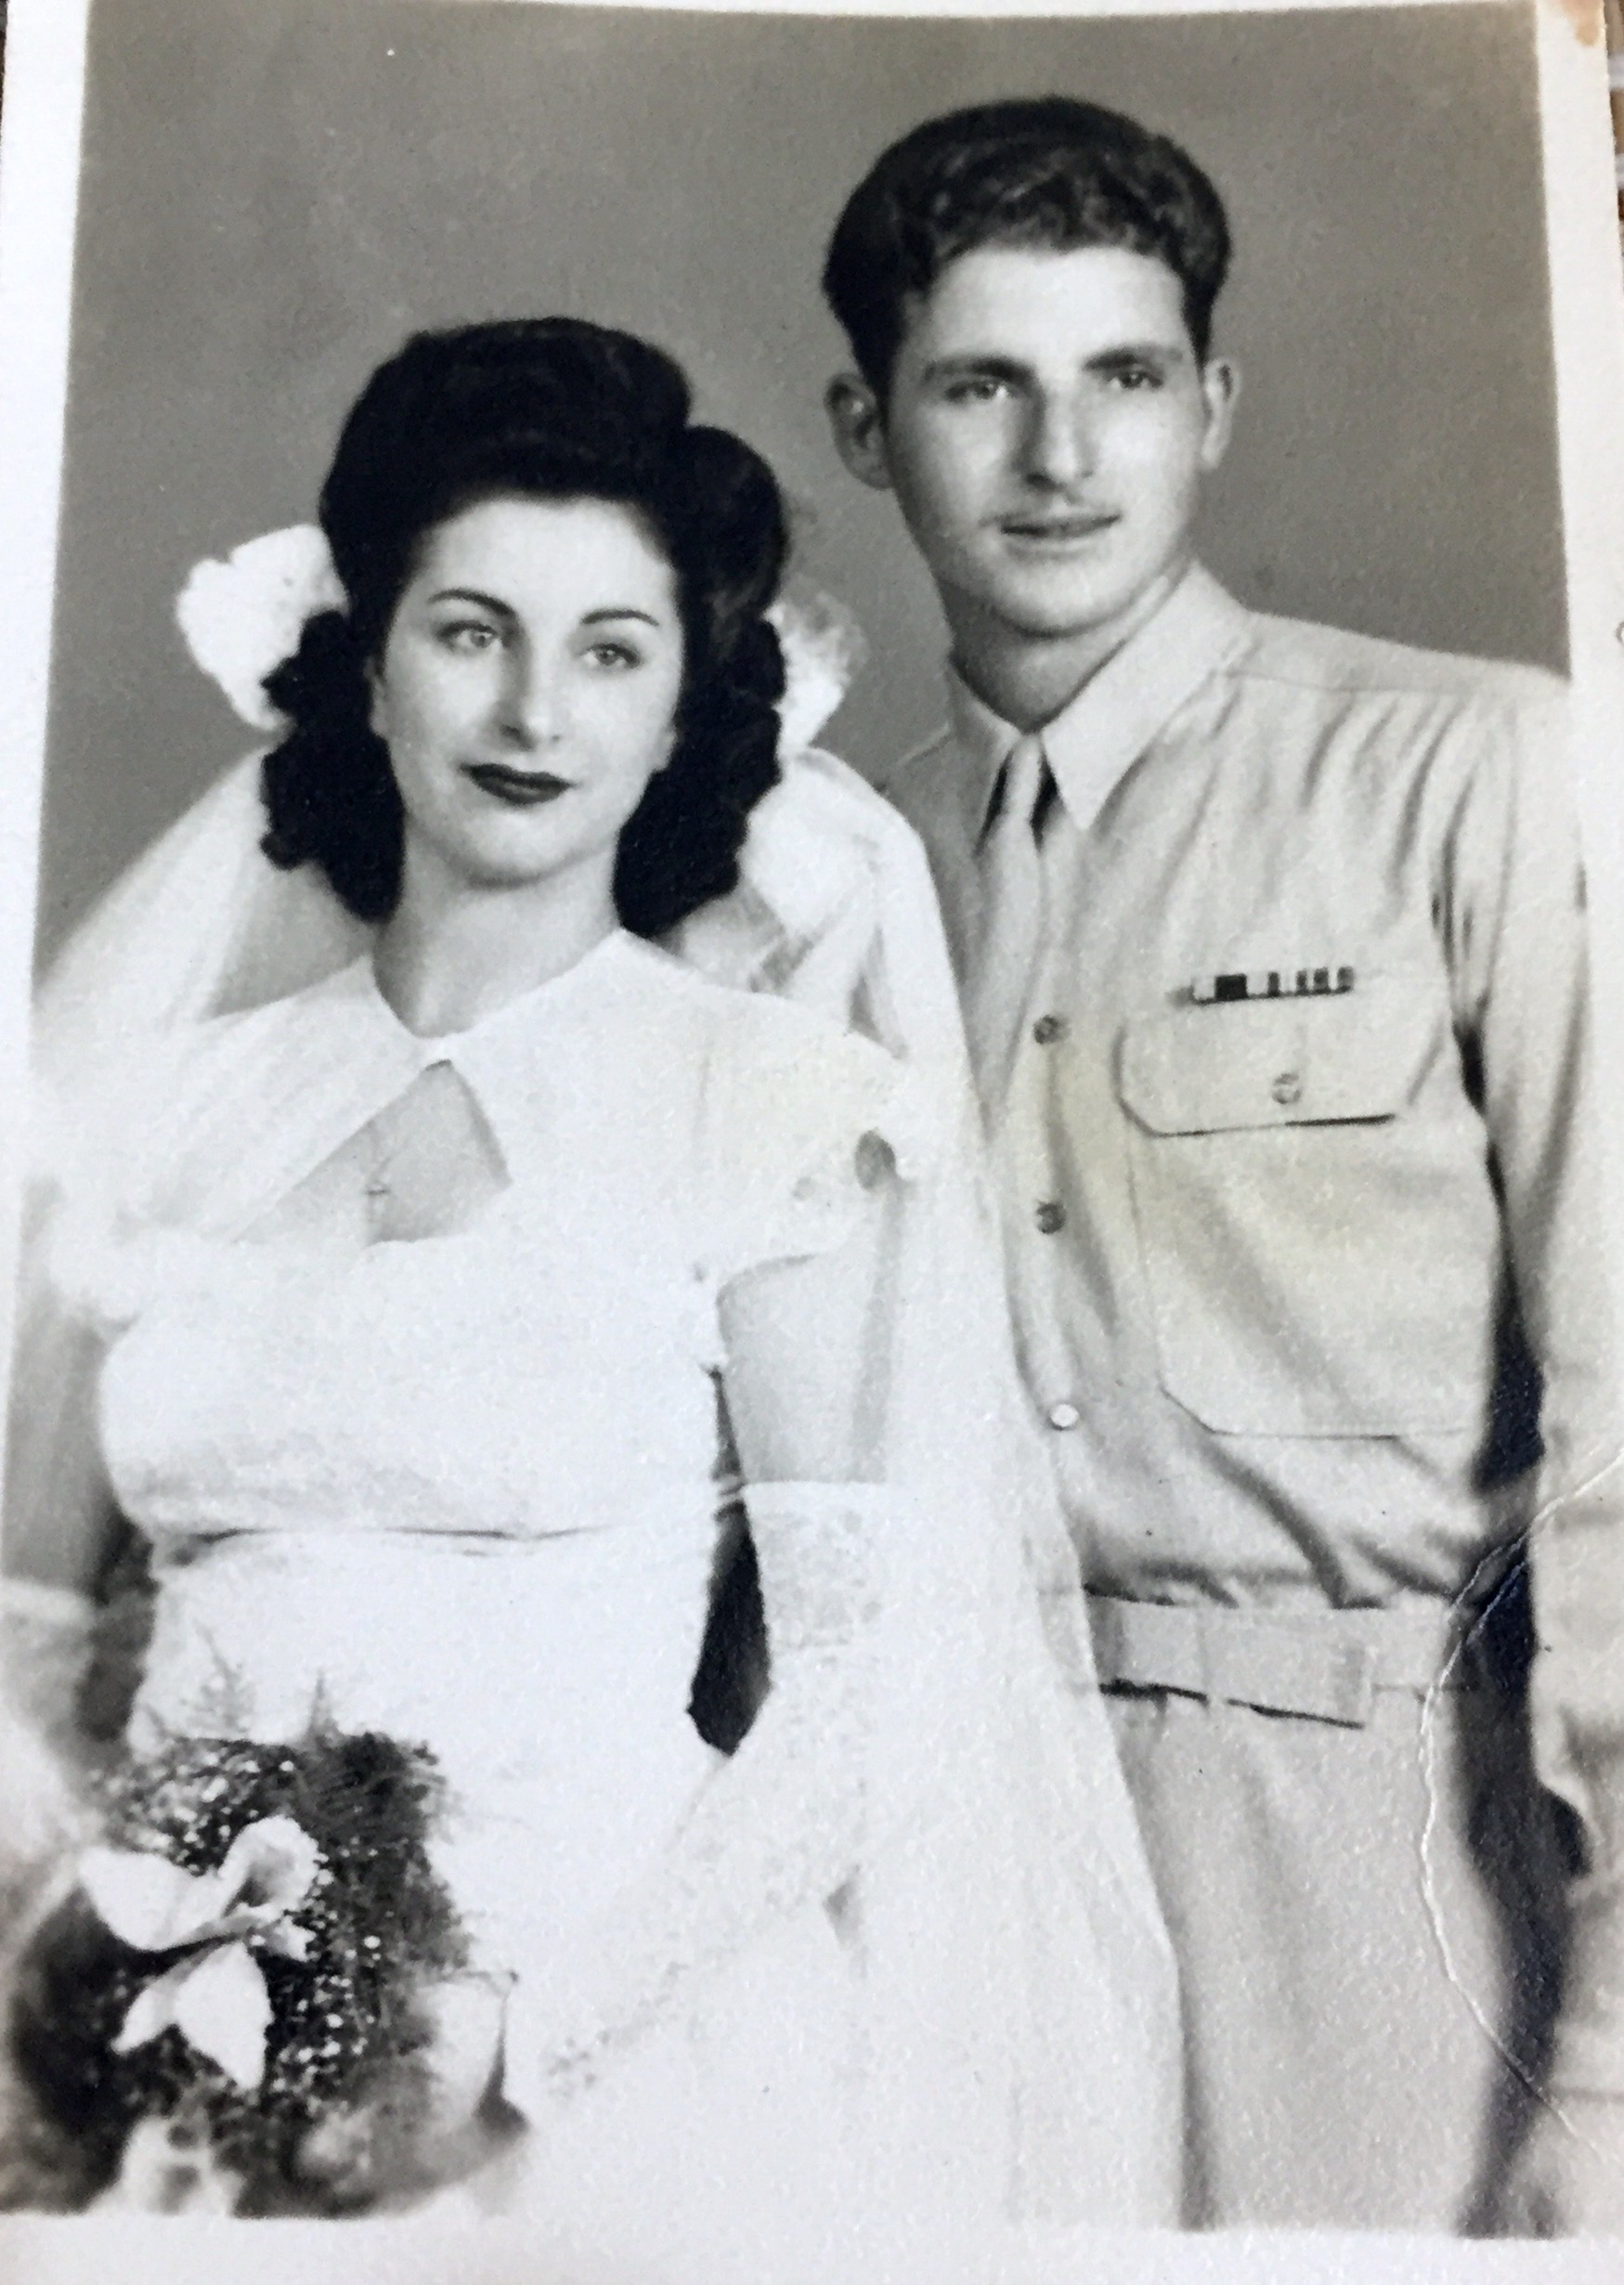 July 23, 1945 
Mom & Dad wedding
